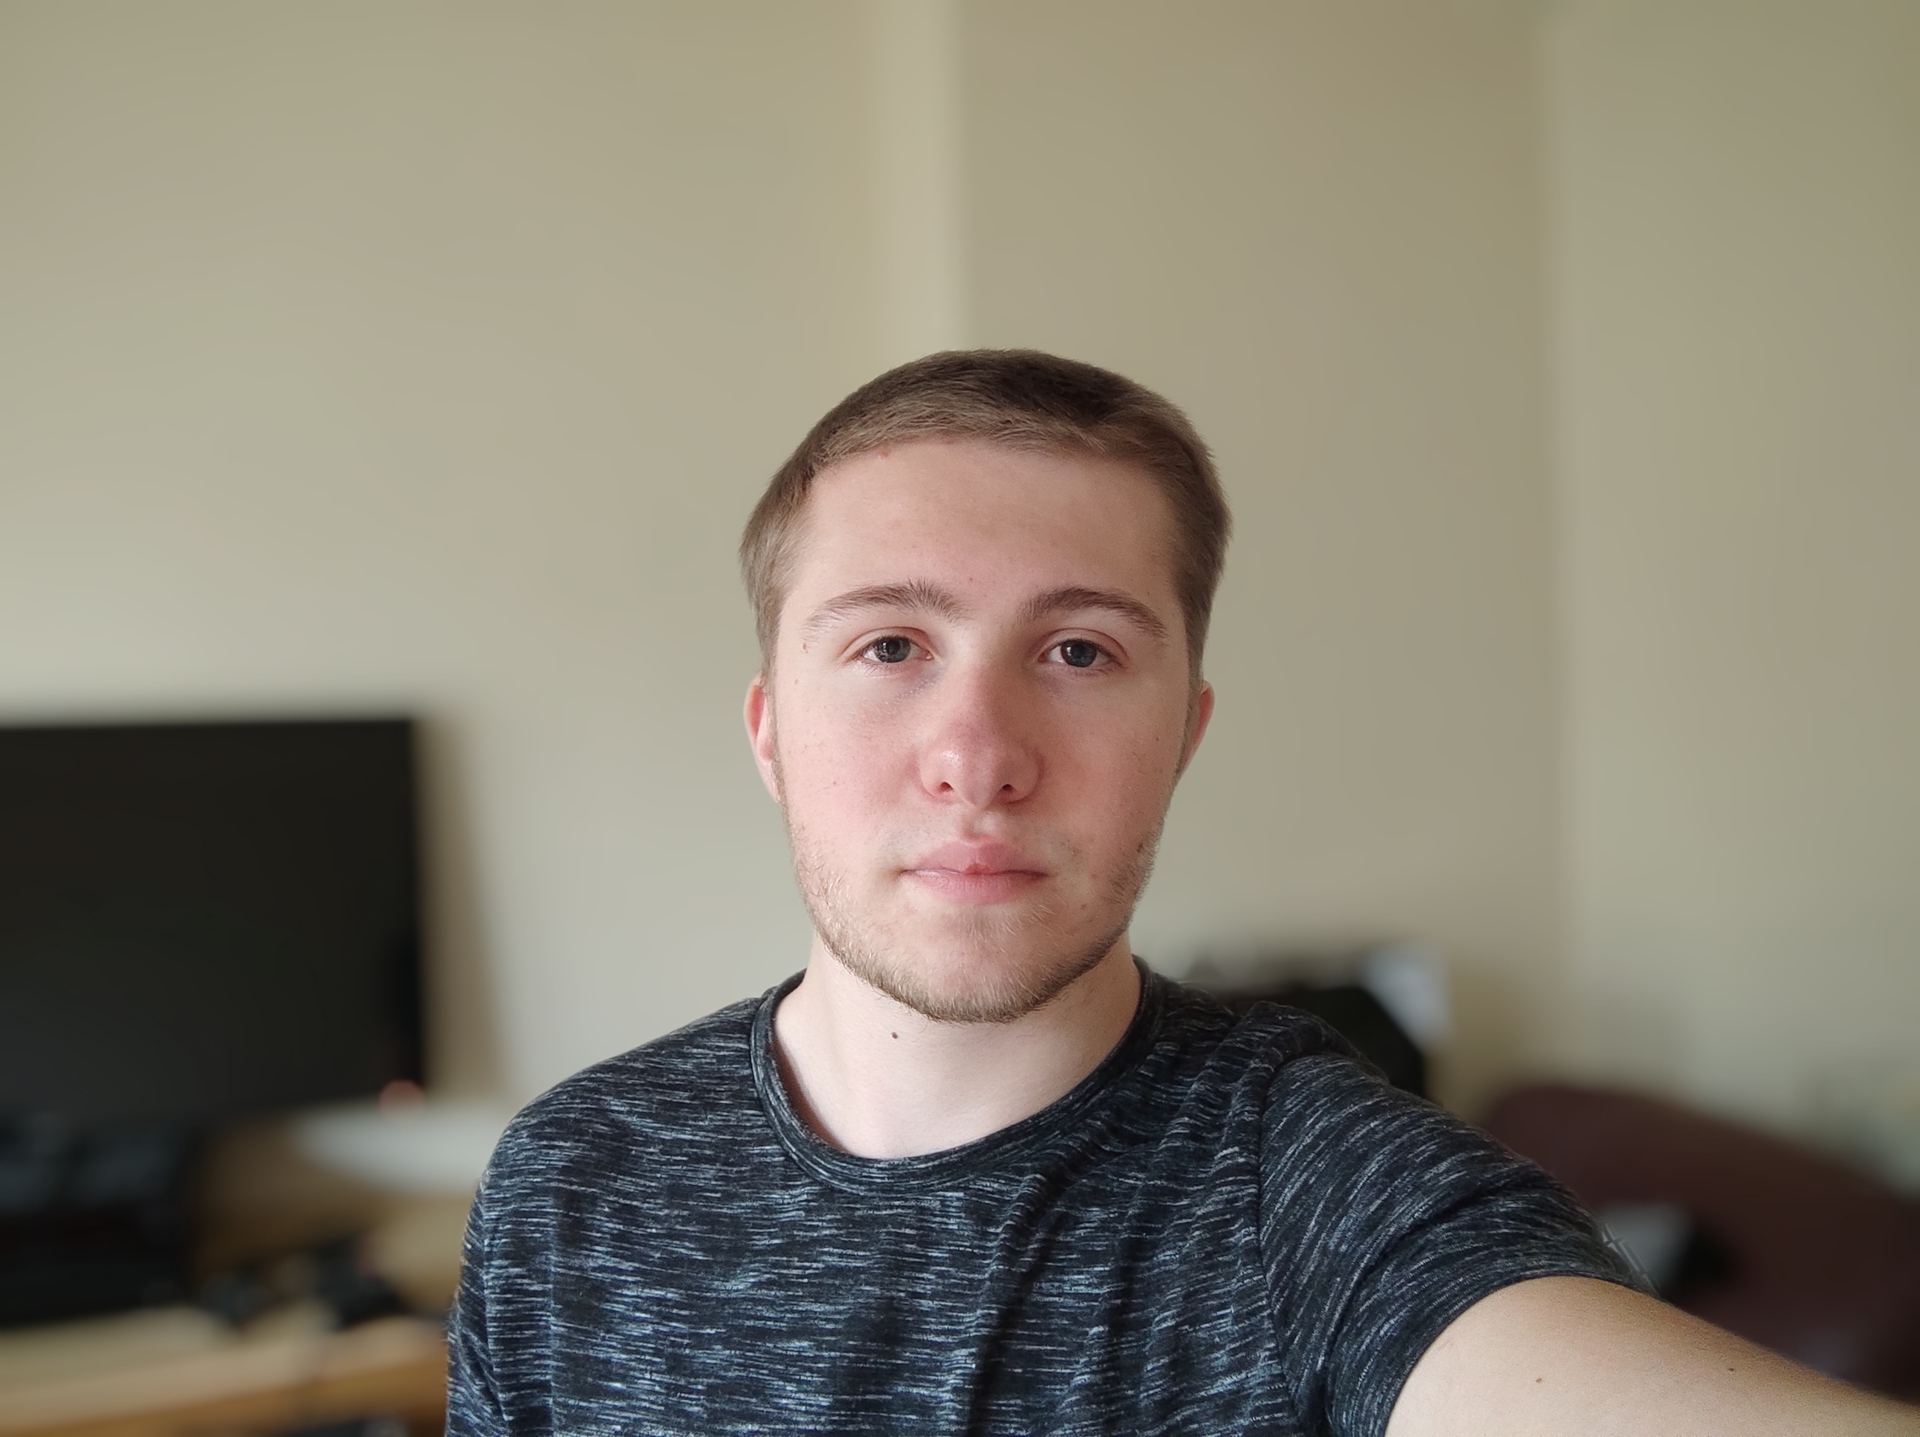 Xiaomi Mi 10 Ultra portrait selfie camera sample in a living room